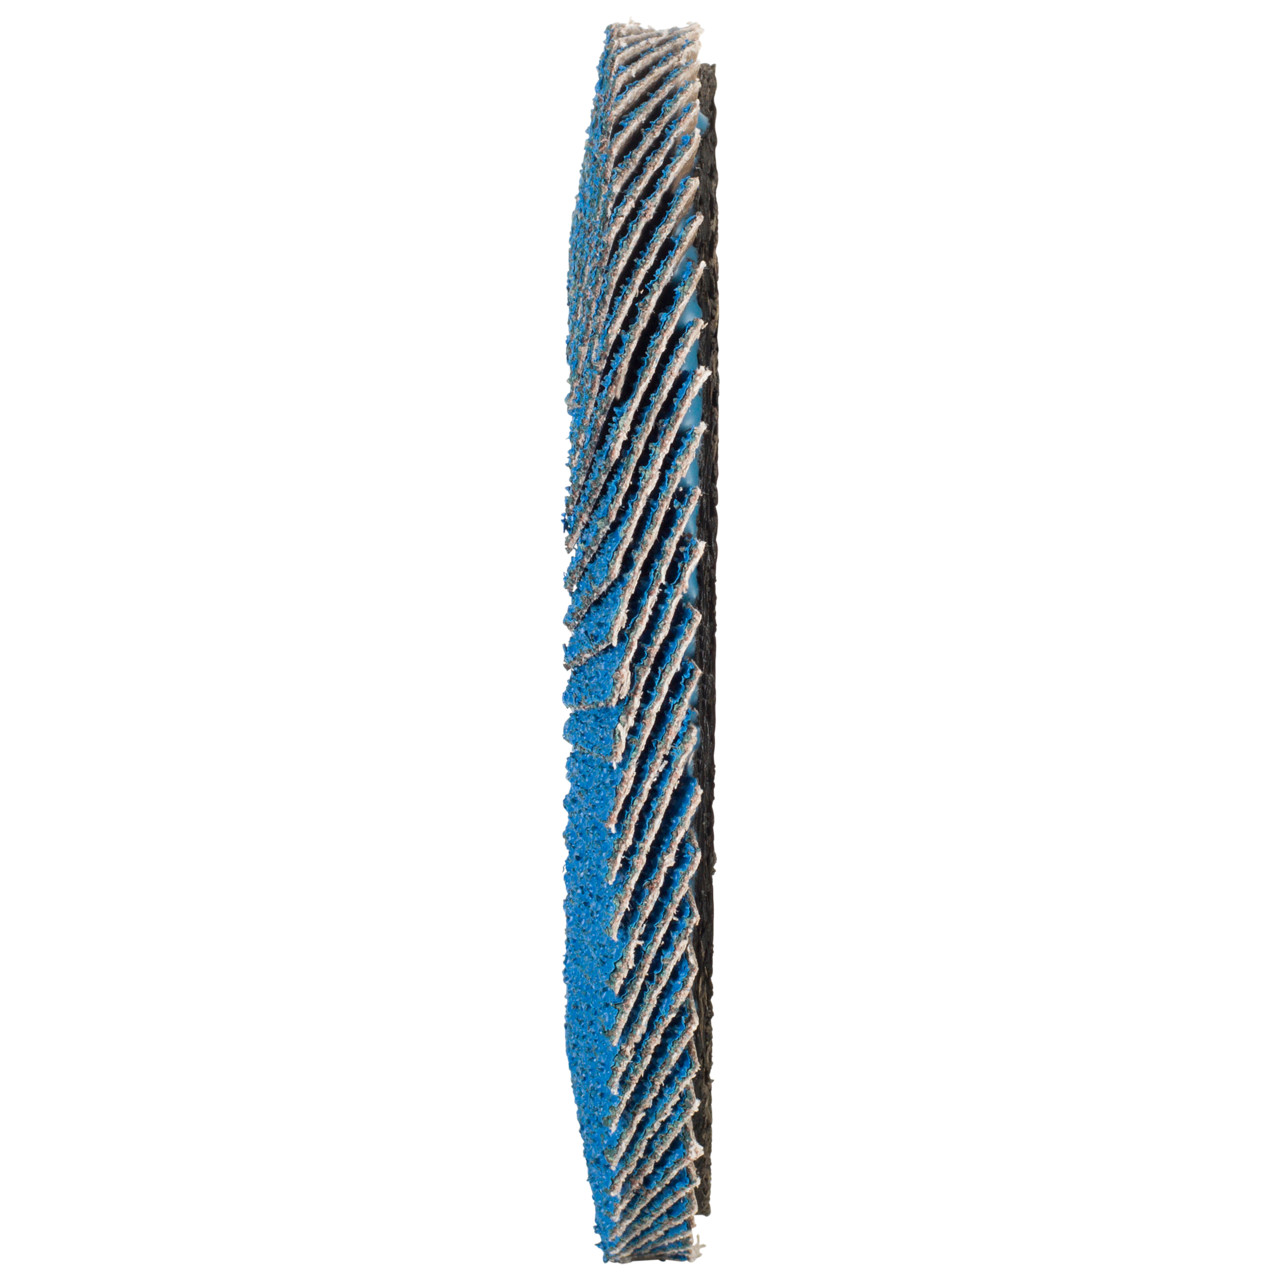 Tyrolit Arandela dentada DxH 115x22,2 FASTCUT para acero y acero inoxidable, P80, forma: 27A - versión con manivela (versión con cuerpo de soporte de fibra de vidrio), Art. 160235